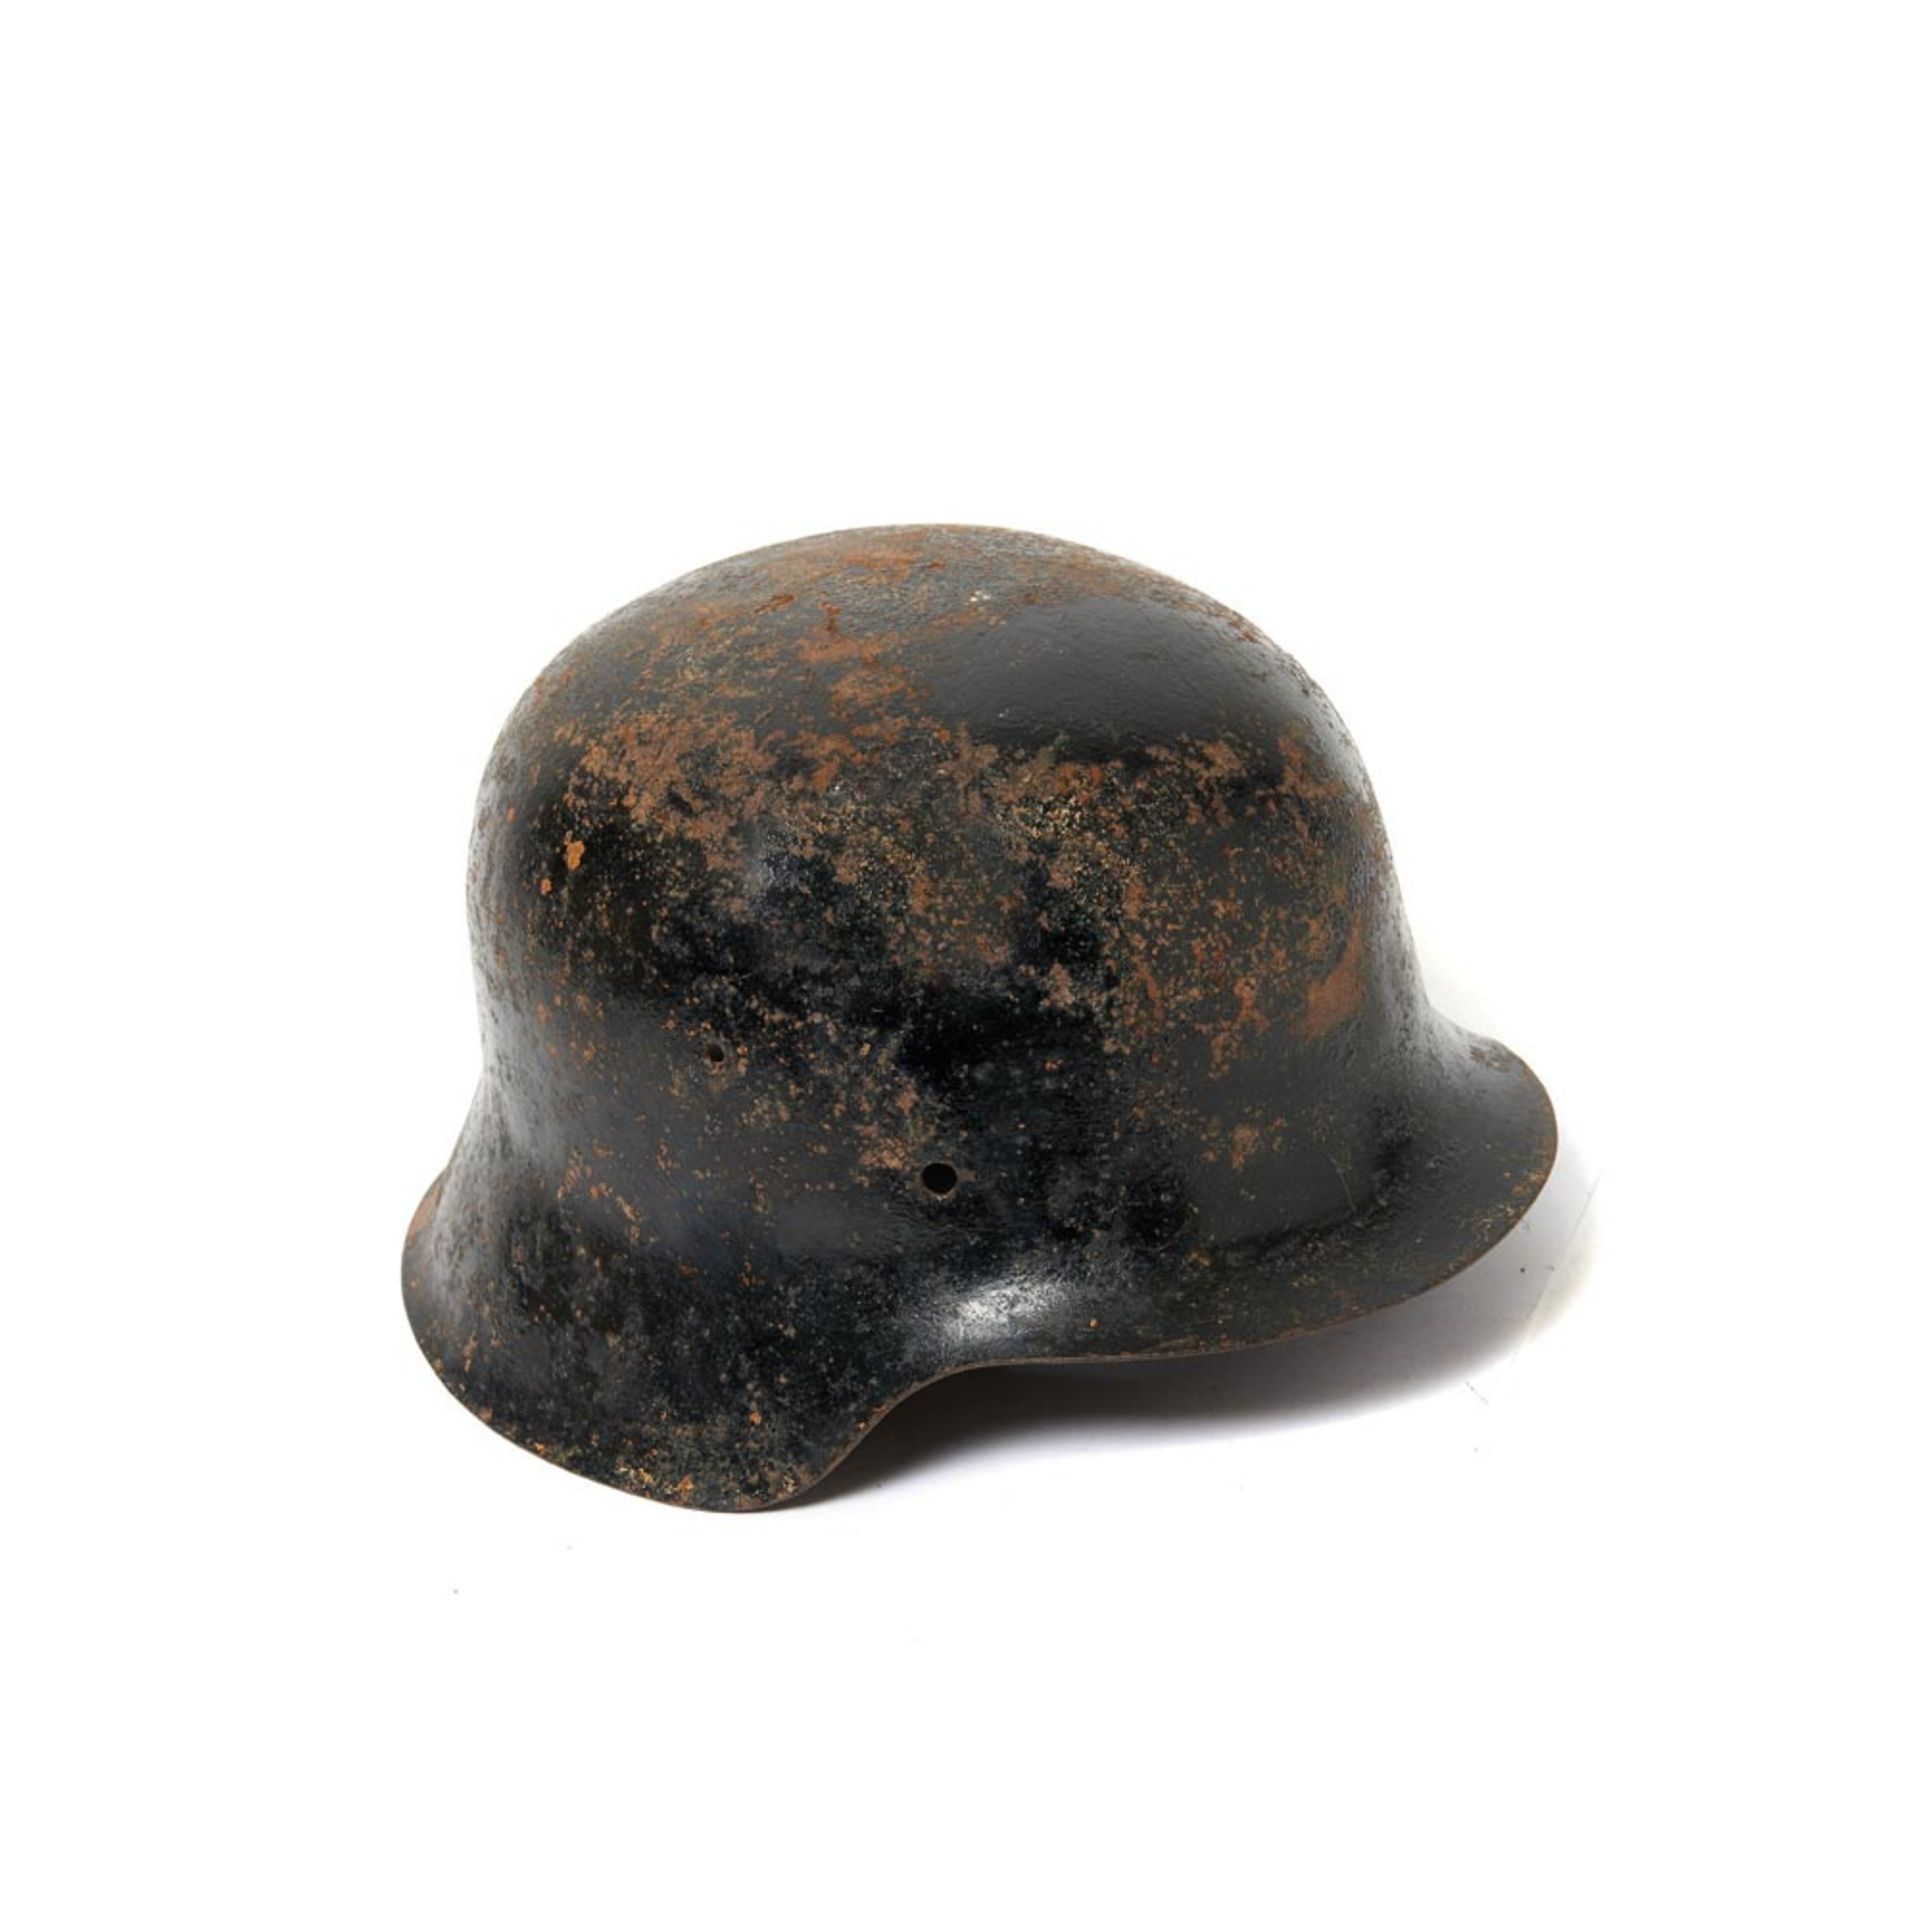 German World War II helmet, c.1940